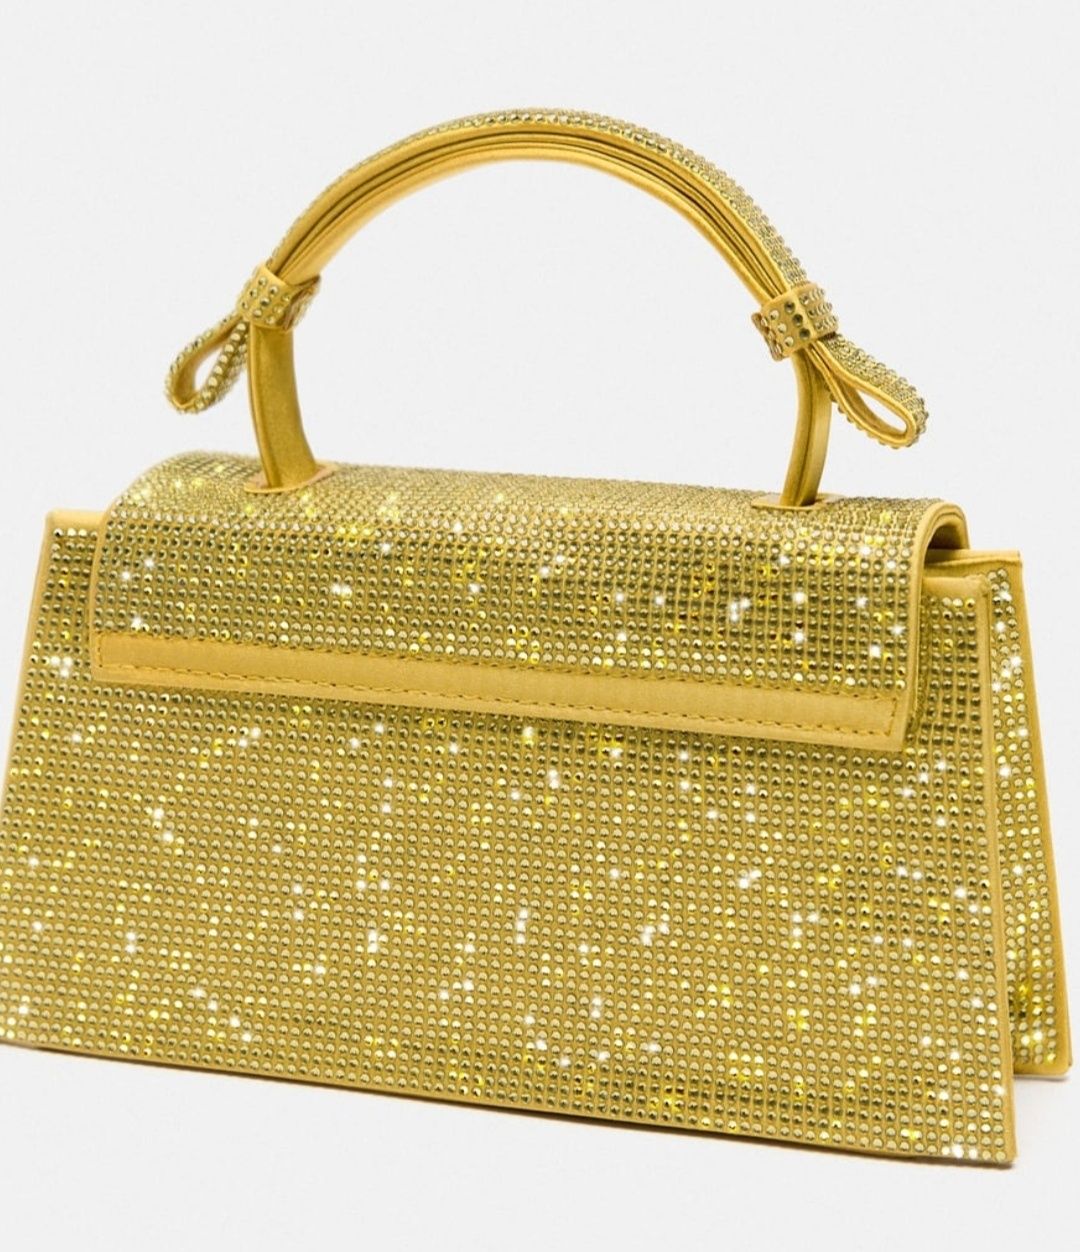 Piękna złoto-żółta torebka Zara z błyszczącym zdobieniemNowa50złTANIEJ